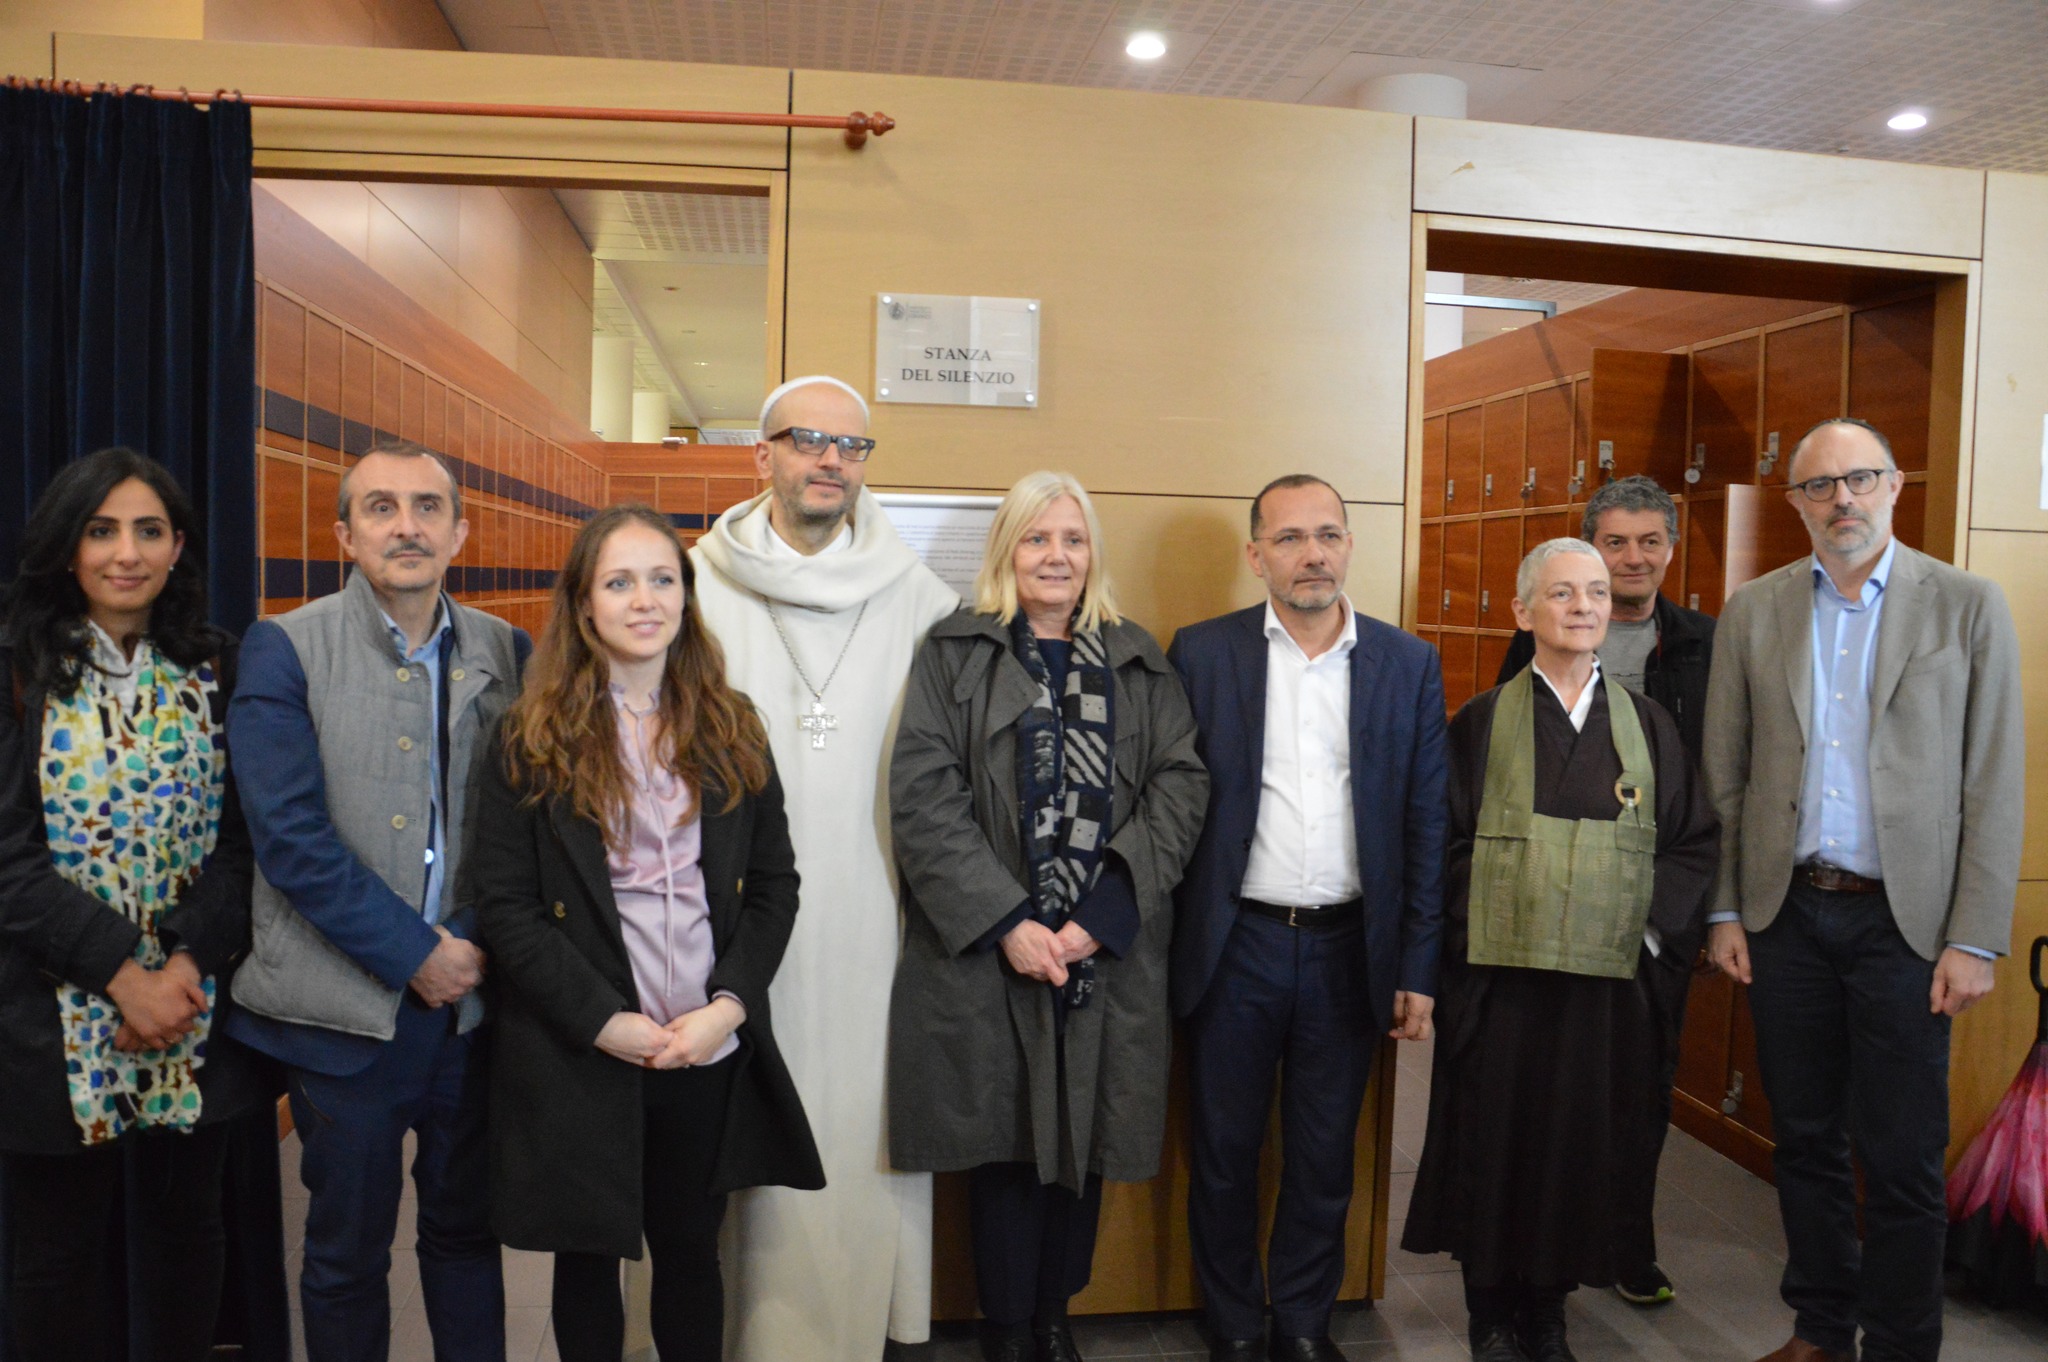 Religioni: all’università di Firenze inaugurata la ‘stanza del silenzio’